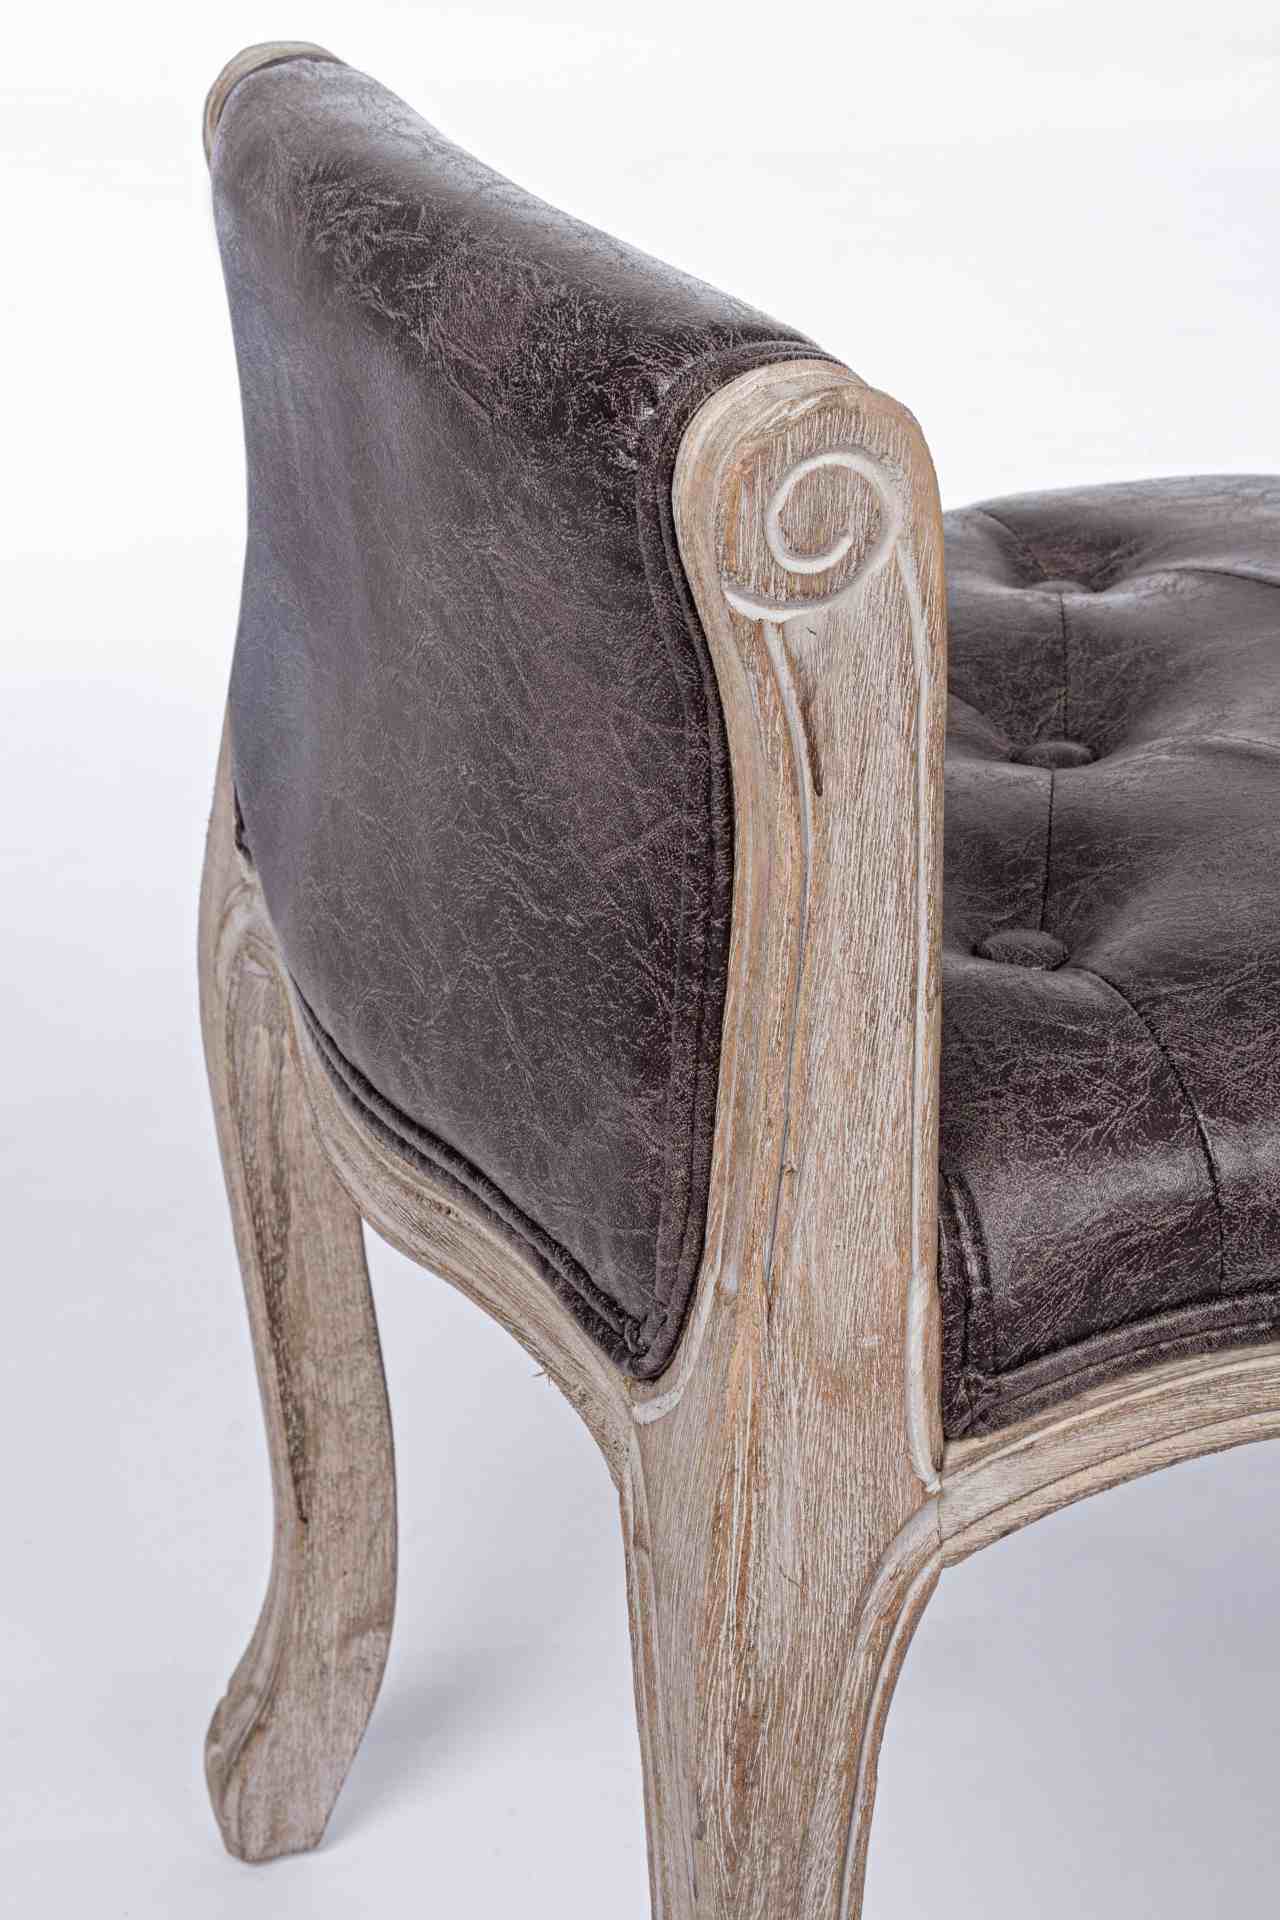 Die Bank Diva überzeugt mit ihrem klassischem Design. Gefertigt wurde die Bank aus einem Kunststoff-Bezug, welcher einen braunen Farbton besitzt. Das Gestell ist aus Holz und ist natürlich gehalten. Die Sitzhöhe beträgt 45 cm.